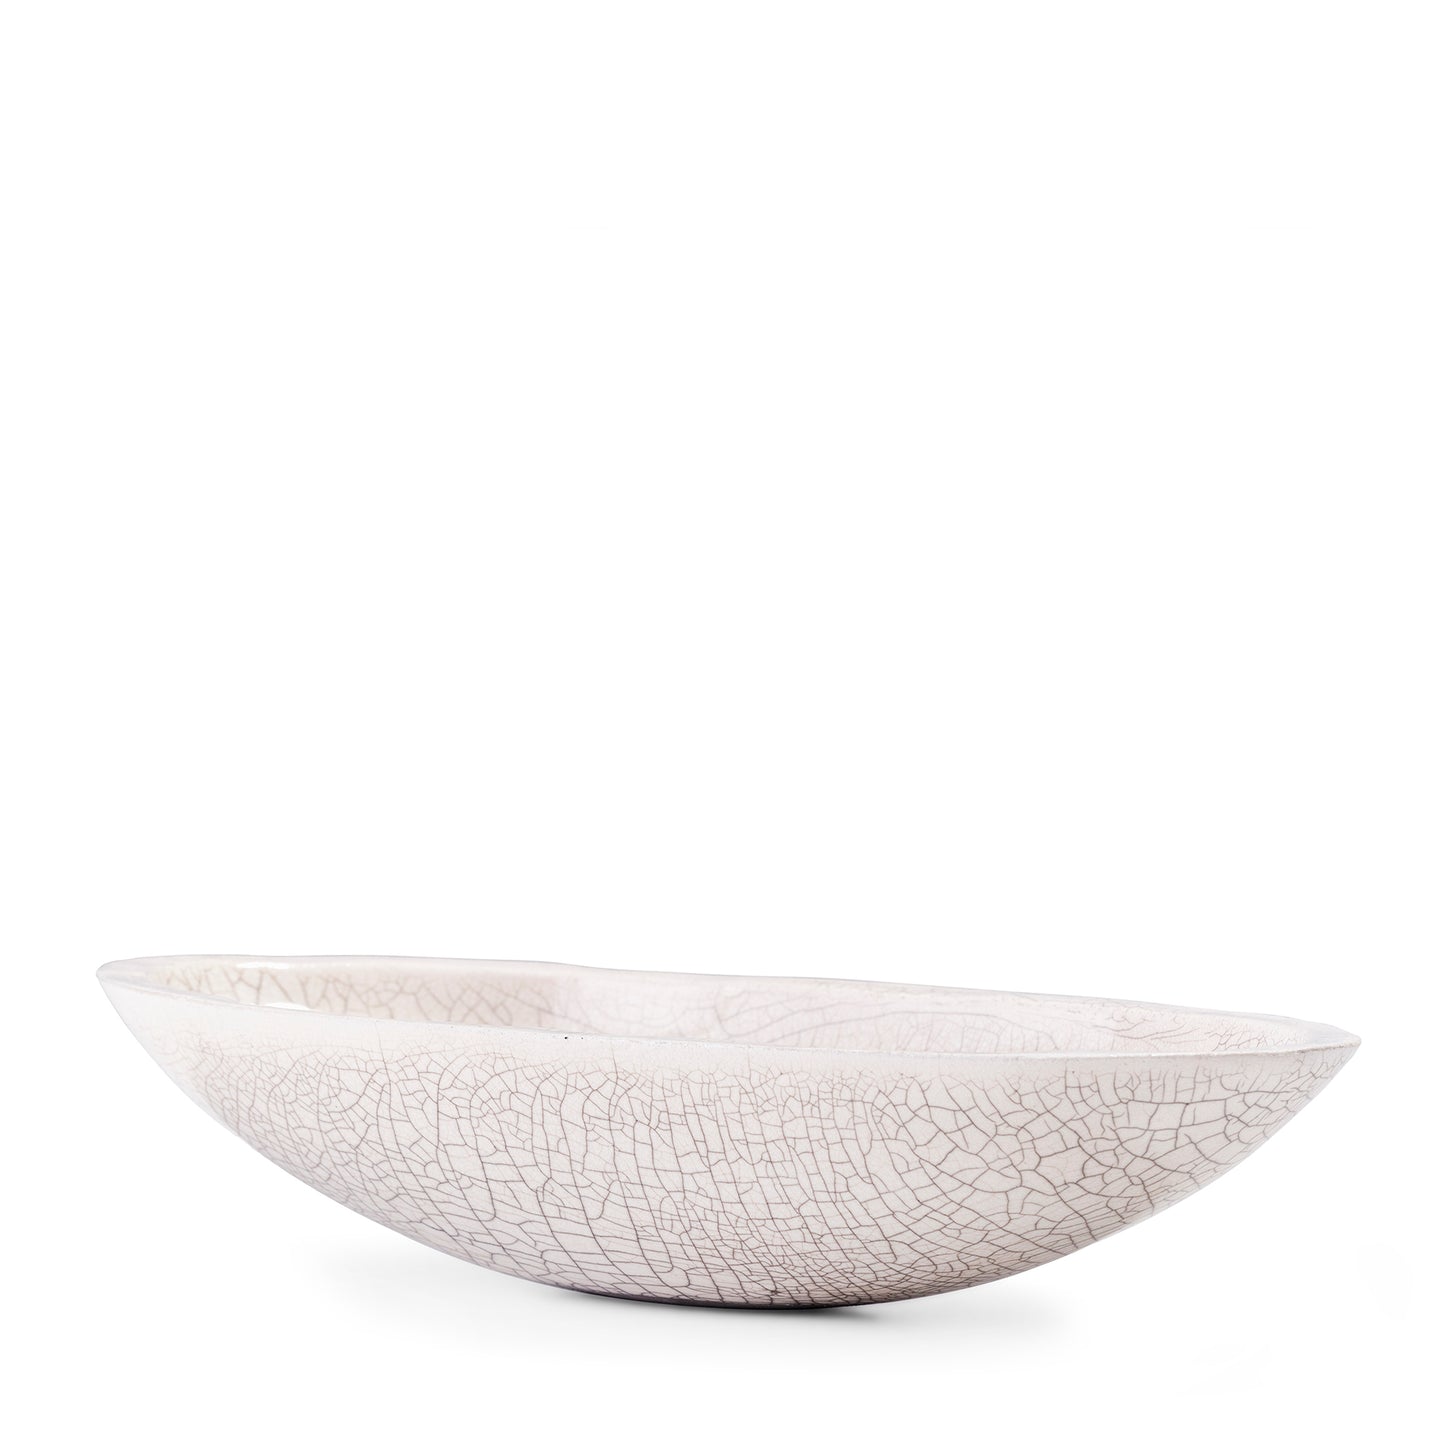 Japanese Donburi L Bowl Raku Ceramic White Crakle